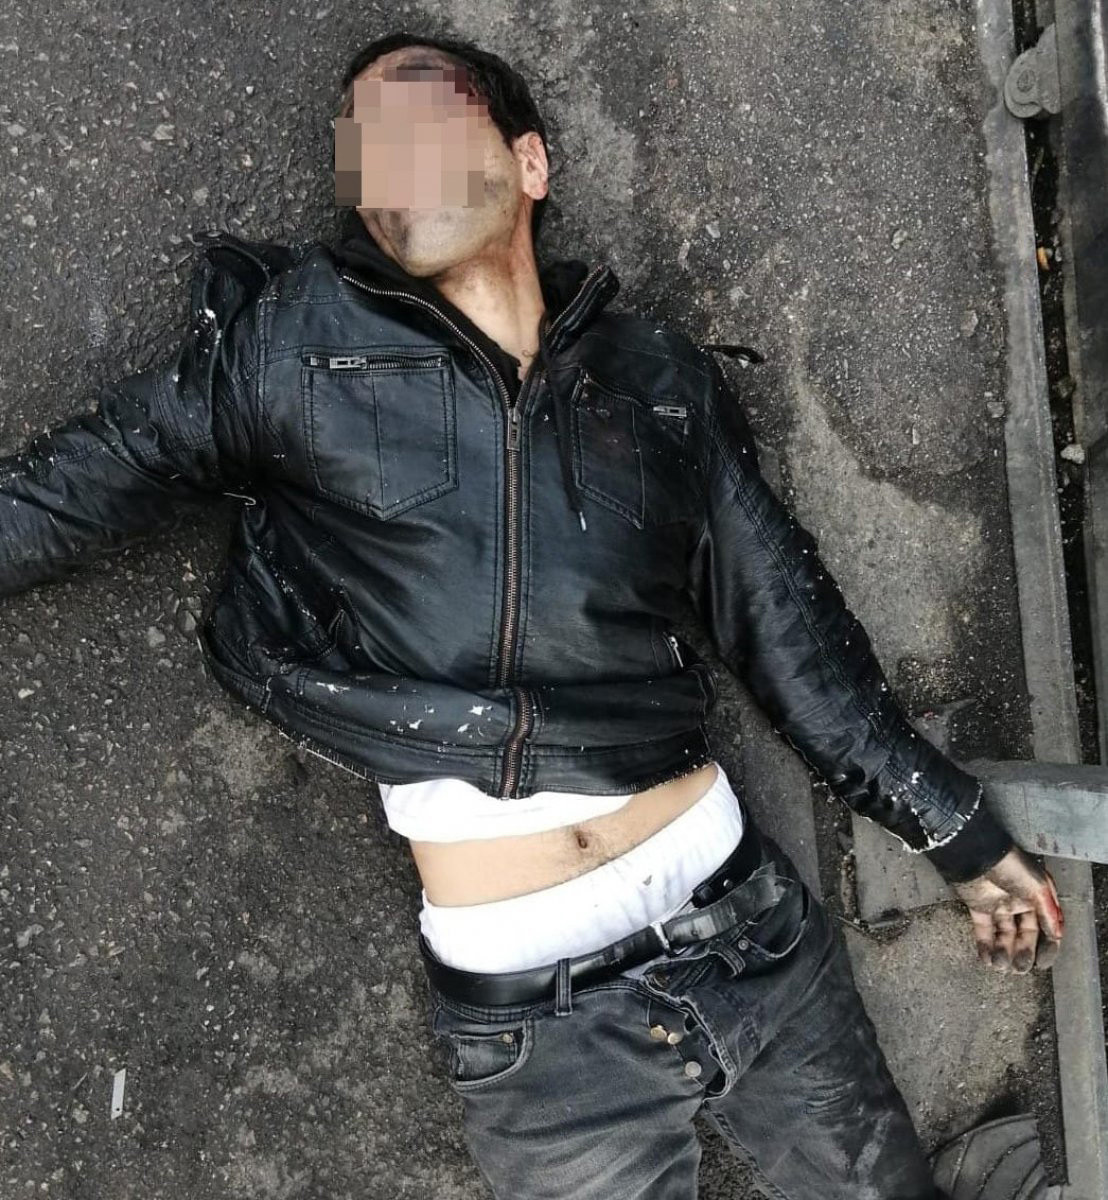 Bursa’da Tecavüz Girişiminde Bulunan Adamı Pitbull Yakaladı54564564